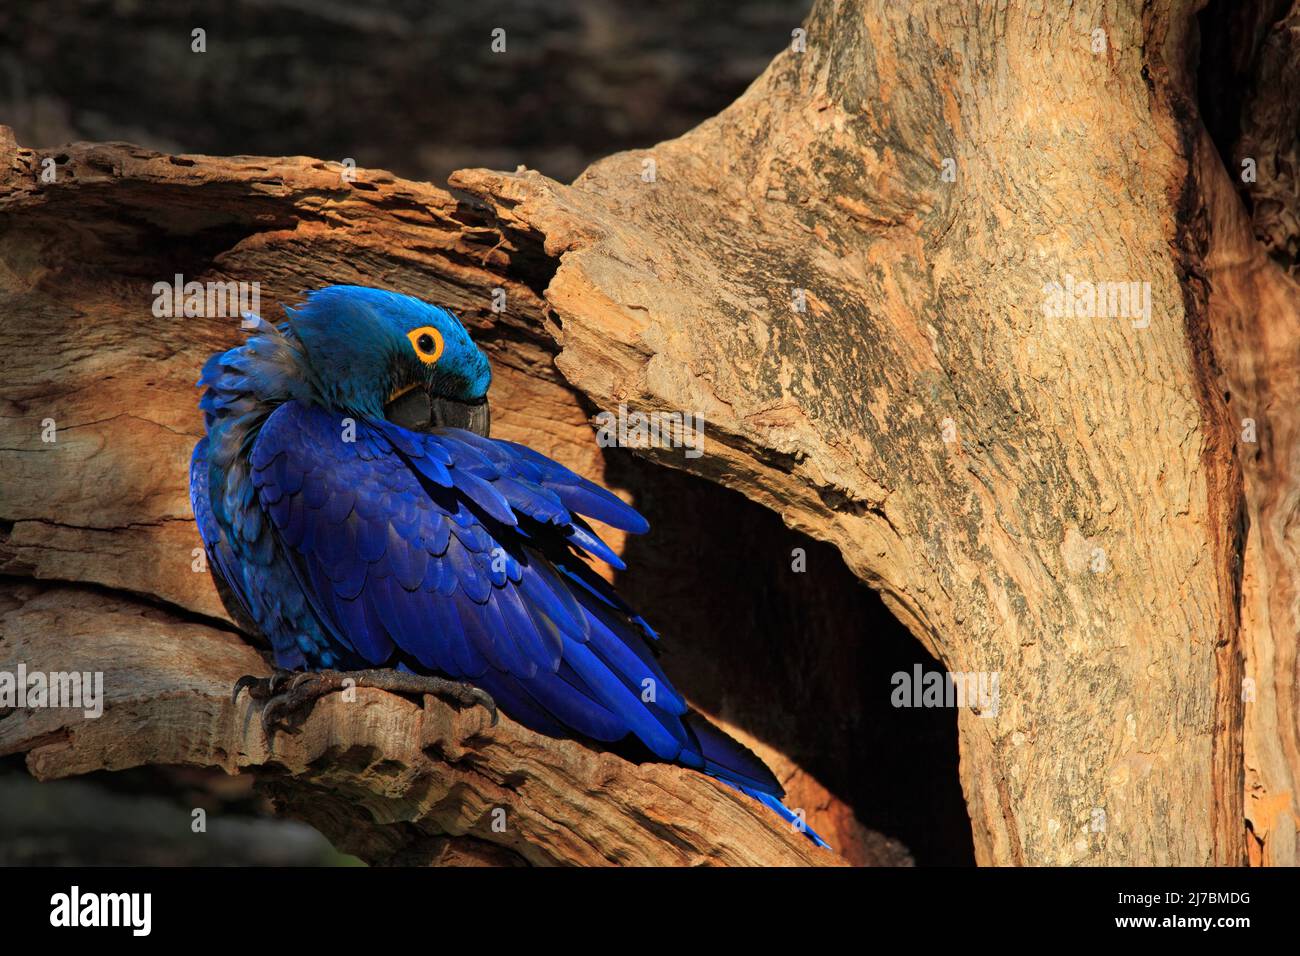 Jacinthe Macaw, Anodorhynchus hyacinthinus, grand perroquet bleu rare dans le trou de nid d'arbres, oiseau dans l'habitat naturel de la forêt, Pantanal, Bolivie, Amérique du Sud Banque D'Images